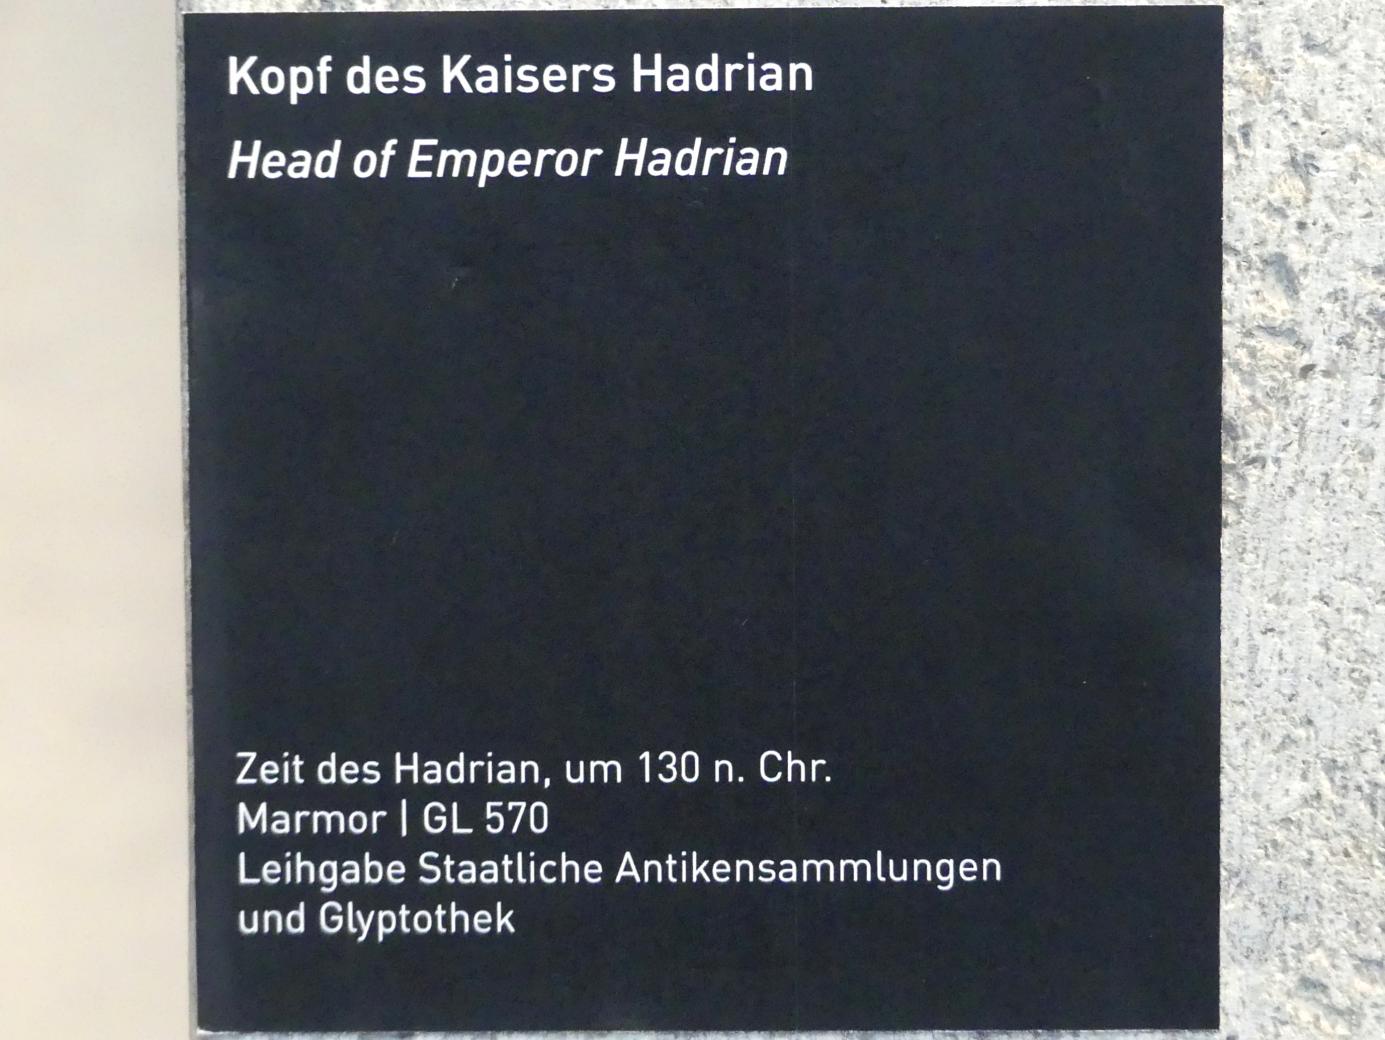 Kopf des Kaisers Hadrian, Römische Kaiserzeit, 27 v. Chr. - 54 n. Chr., 130, Bild 3/3